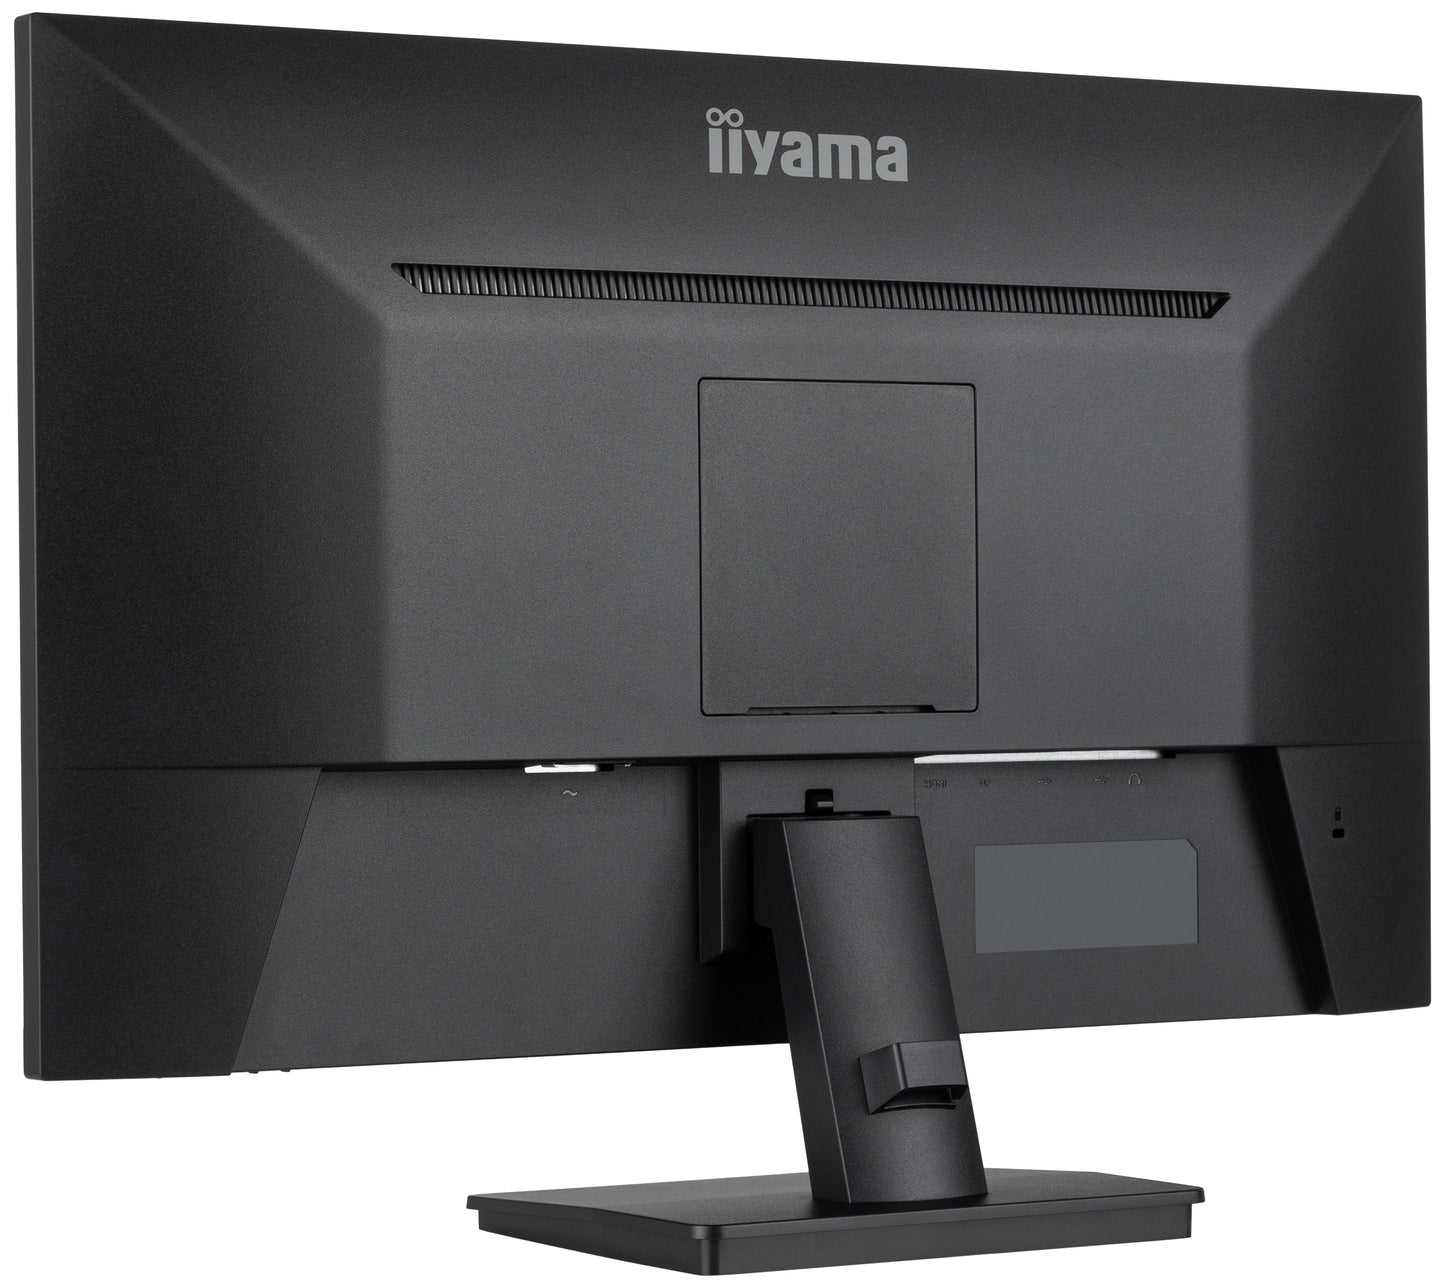 iiyama ProLite XU2793QSU-B6 27” WQHD IPS 100Hz Display with USB Hub